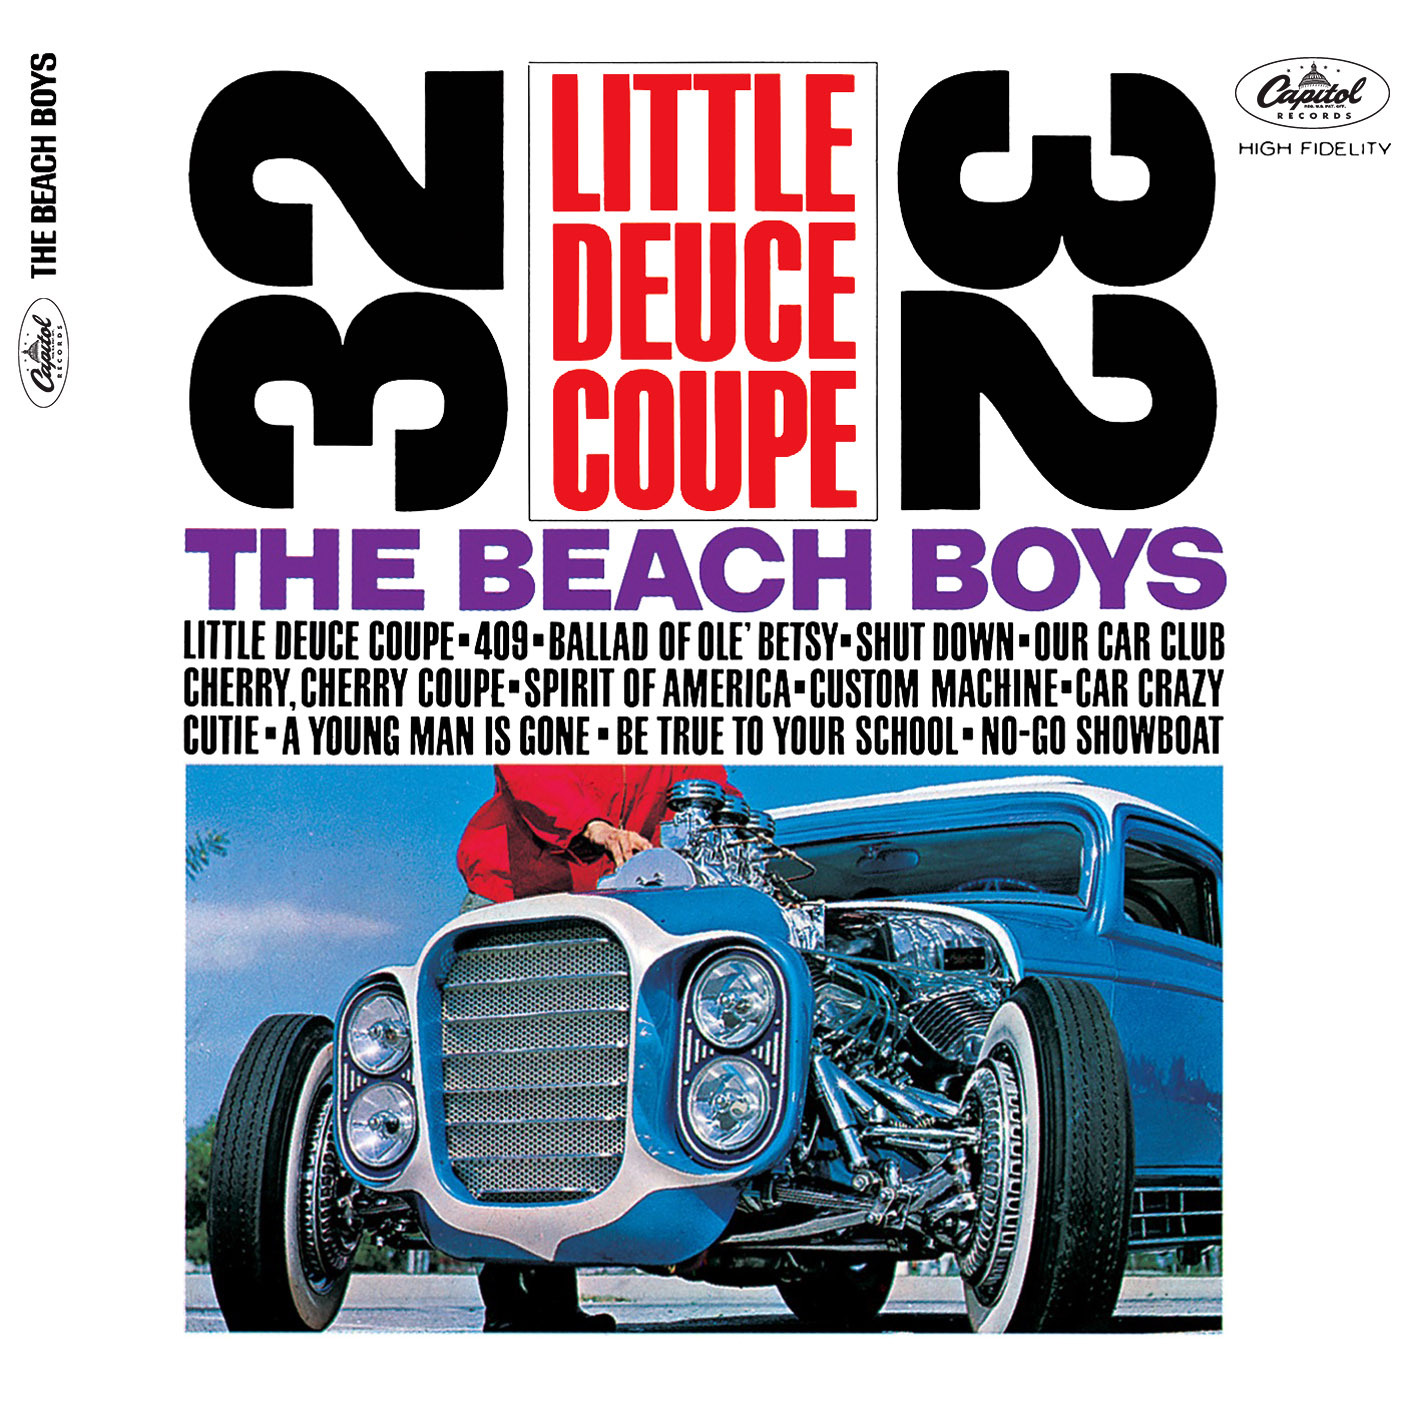 The Beach Boys - Little Deuce Coupe (1963/2015) [HDTracks FLAC 24bit/192kHz]